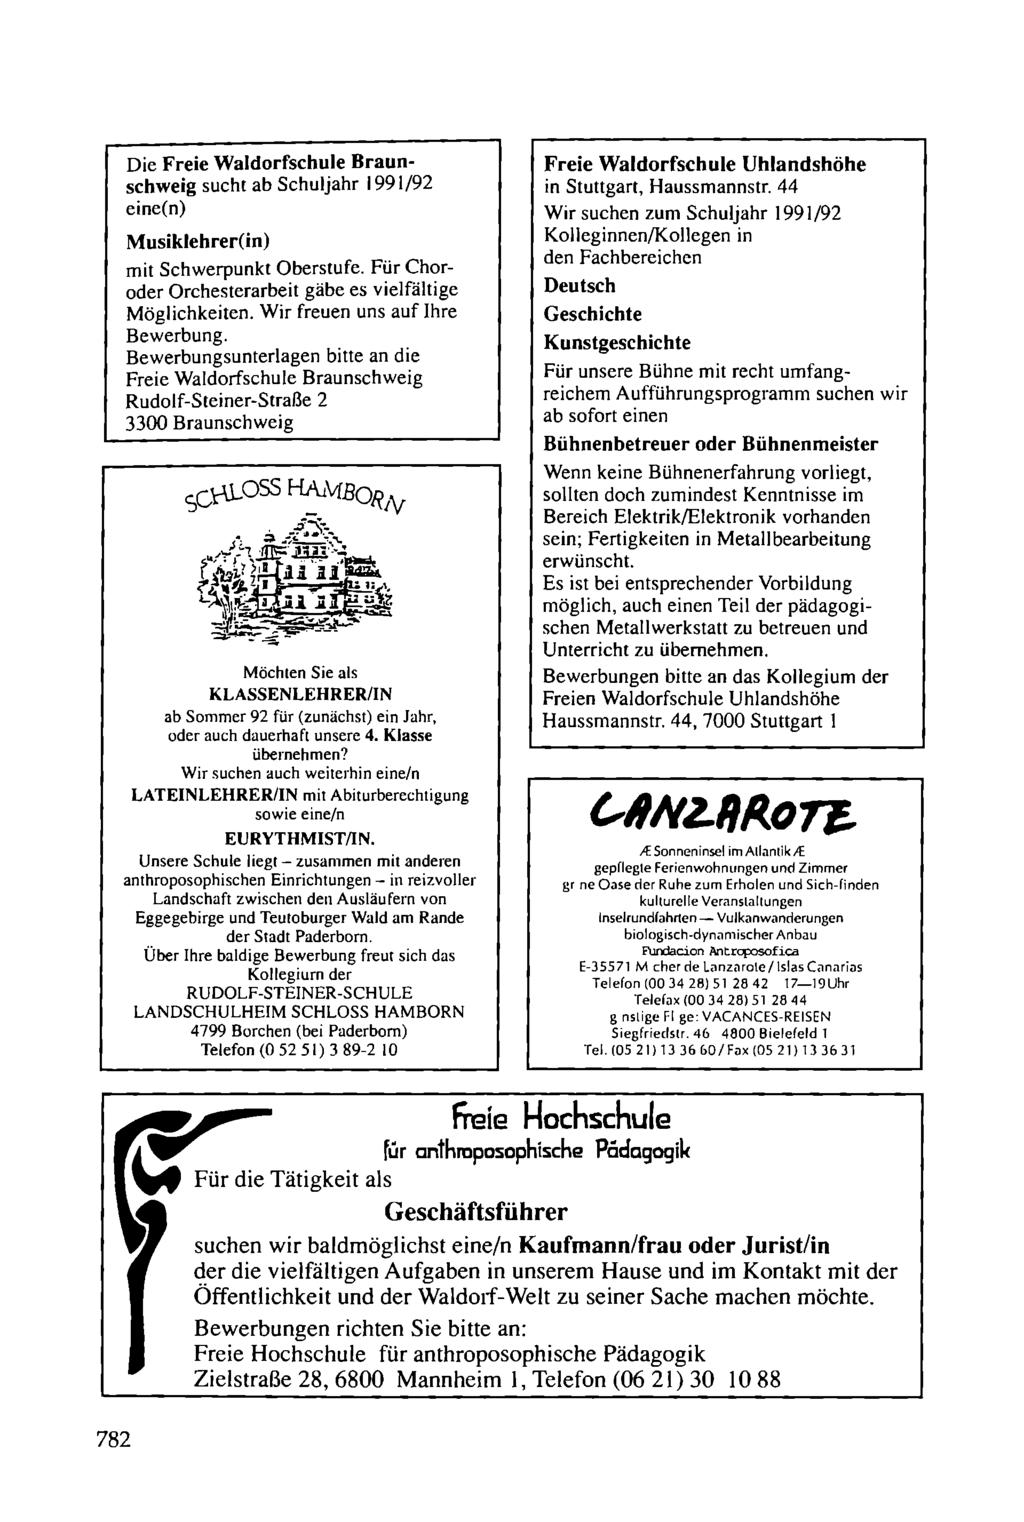 Die Freie Waldorfschule Braunschweig sucht ab Schuljahr 1991/92 eine(n) M usiklehrer(in) mit Schwerpunkt Oberstufe. Für Choroder Orchesterarbeit gäbe es vielfältige Möglichkeiten.